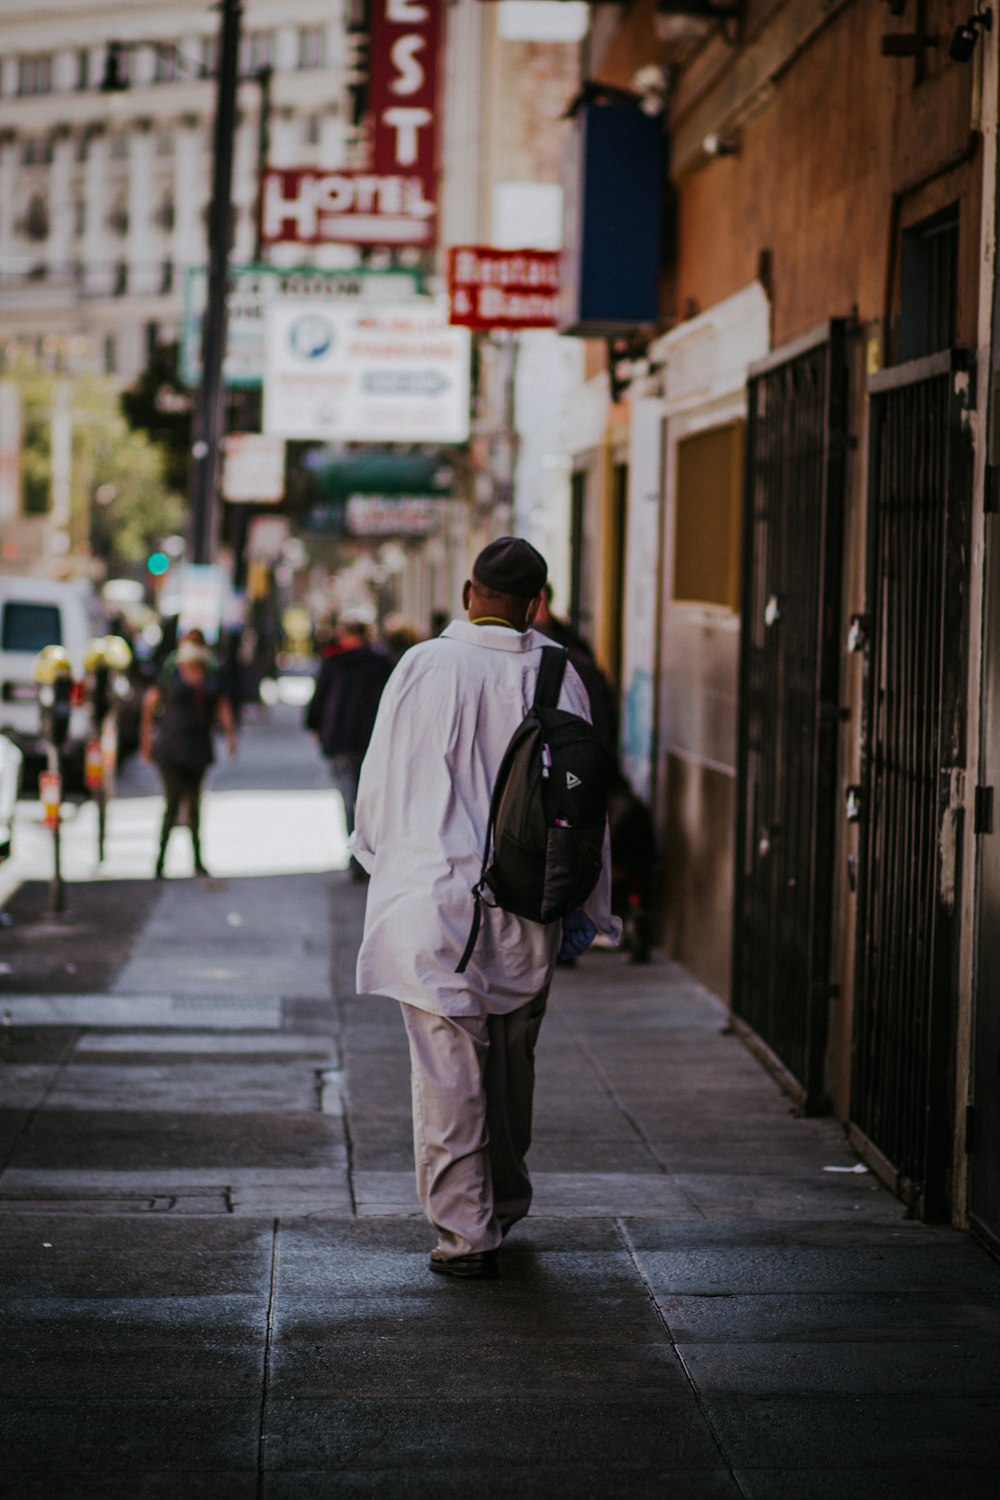 man in white jacket walking on sidewalk during daytime